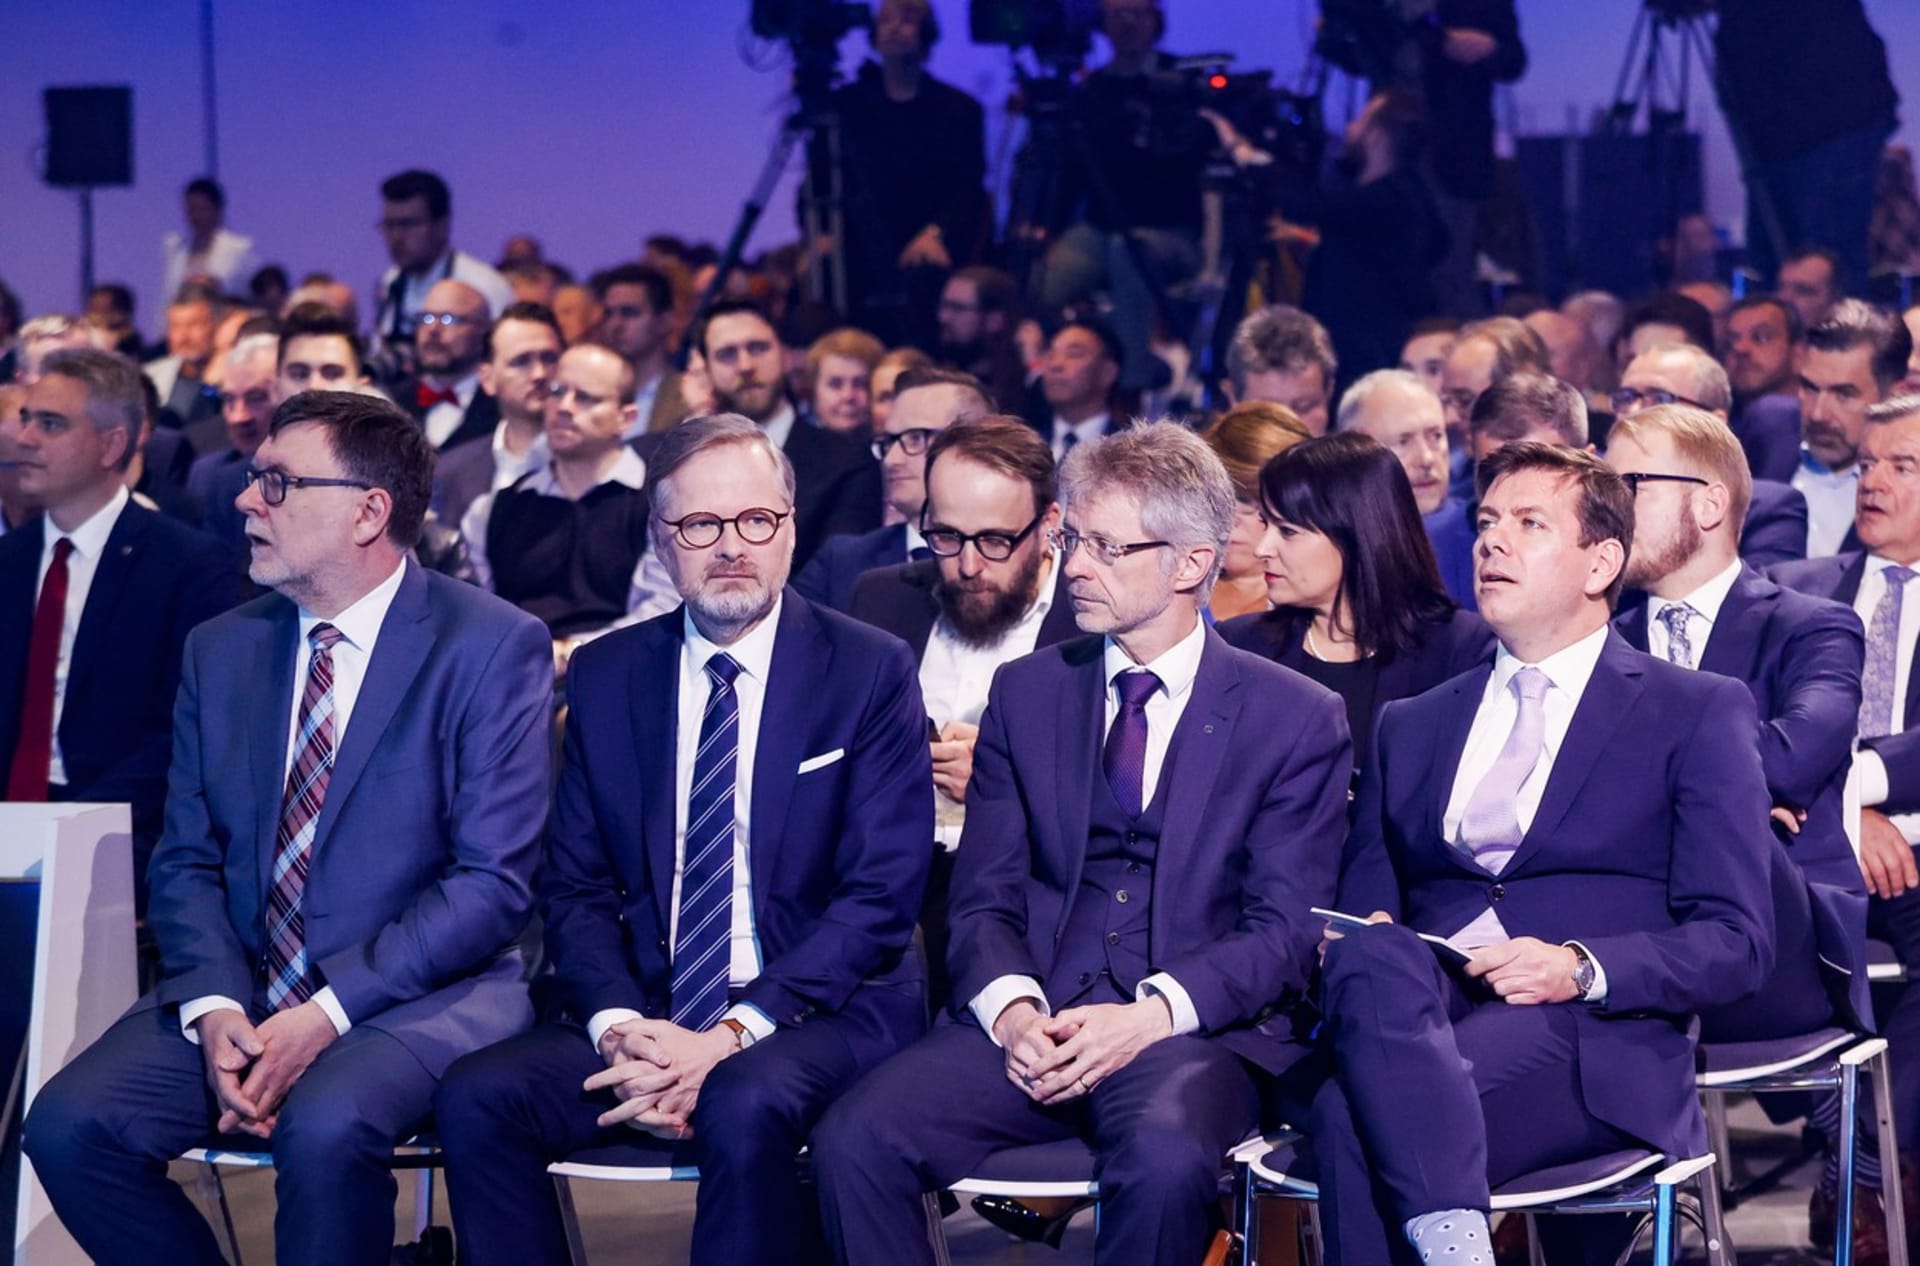 Ideová konference ODS. Poradce František Cerha sedí v druhé řadě mezi Petrem Fialou a Milošem Vystrčilem